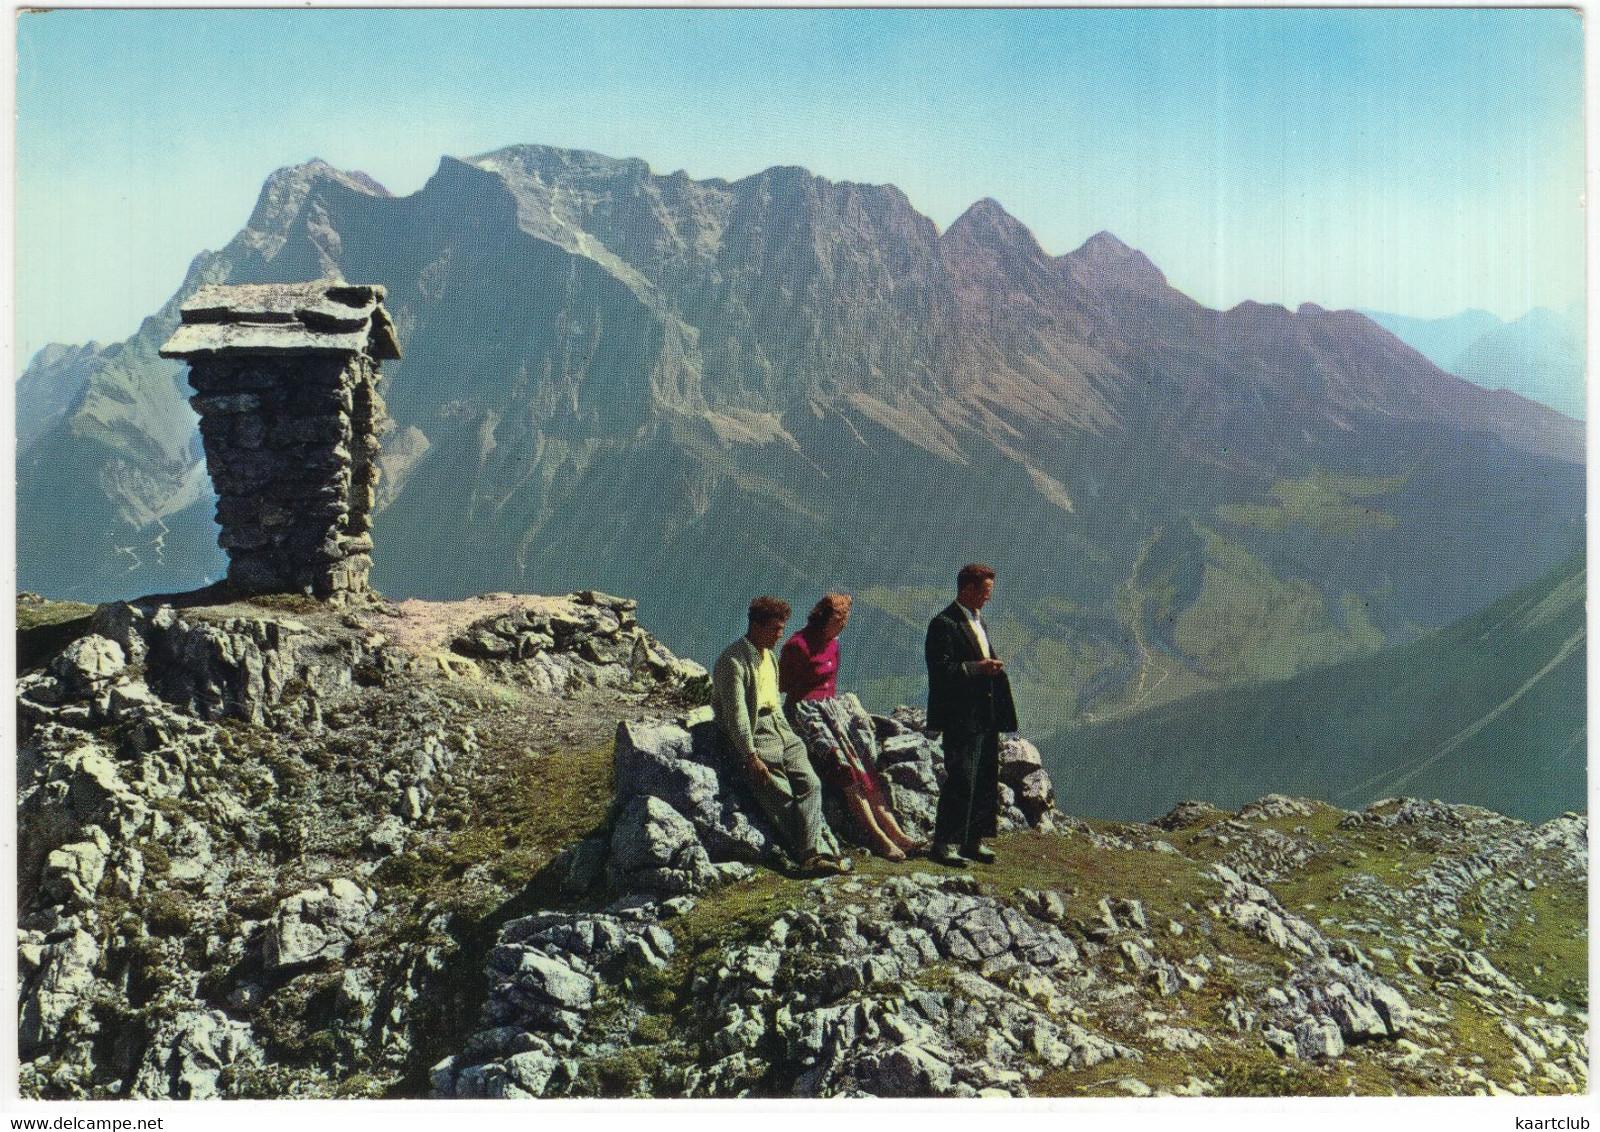 Am Grubigstein 2218 M Bei Lermoos I. Tirol - Blick Zur Zugspitze, 2963 M - (Österreich/Austria) - Lermoos